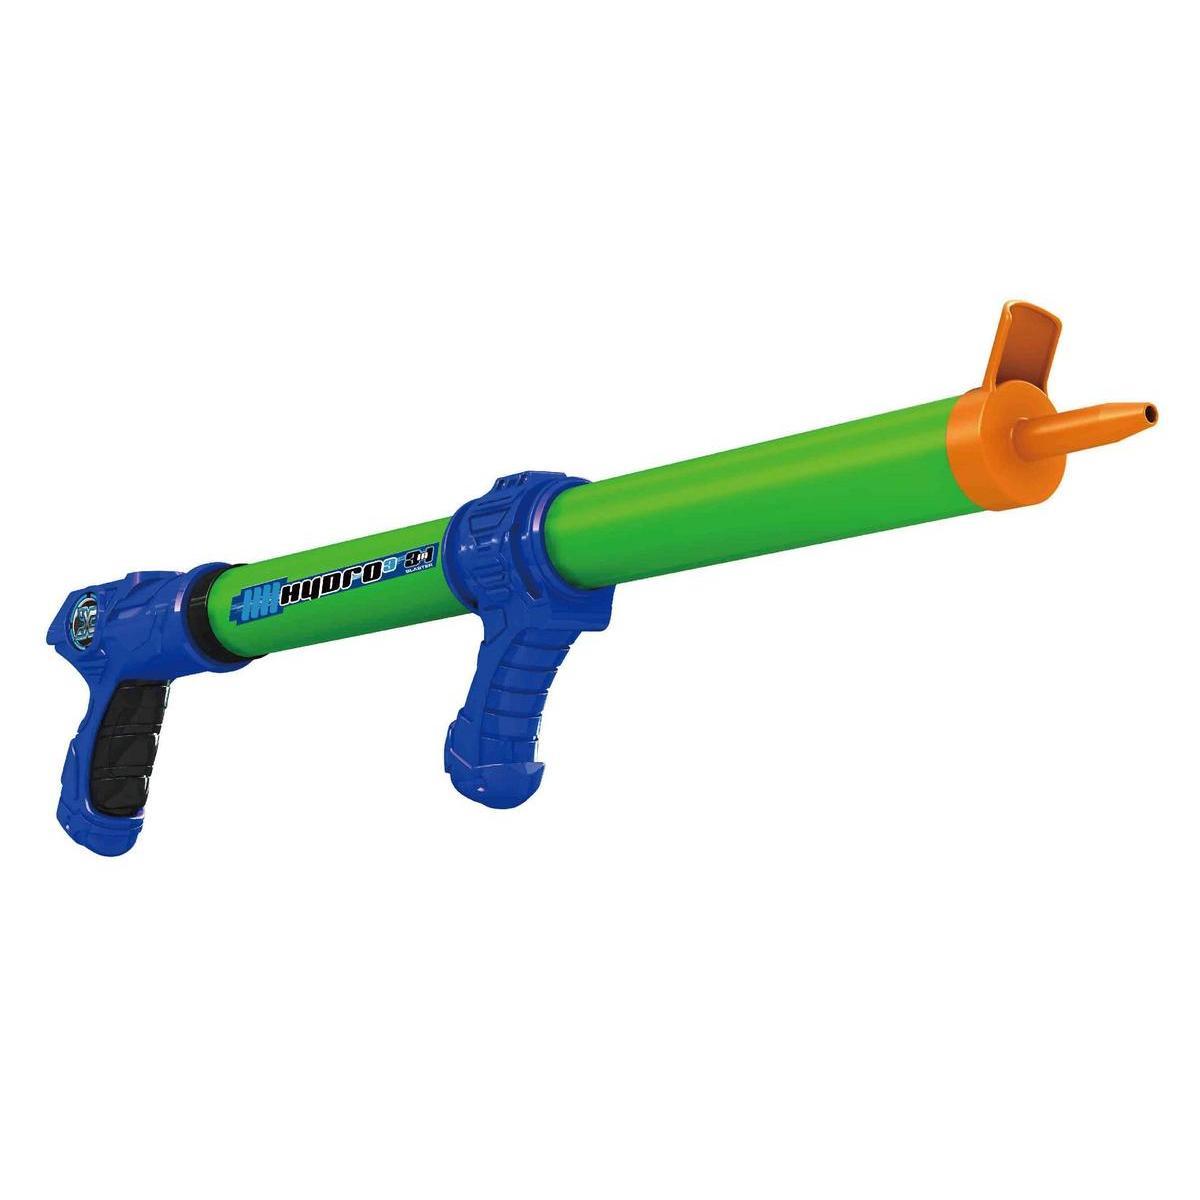 Pistolet à eau 2 en 1 + 80 ballons - Plastique - 5 x 63 x 14,5 cm - Vert et bleu